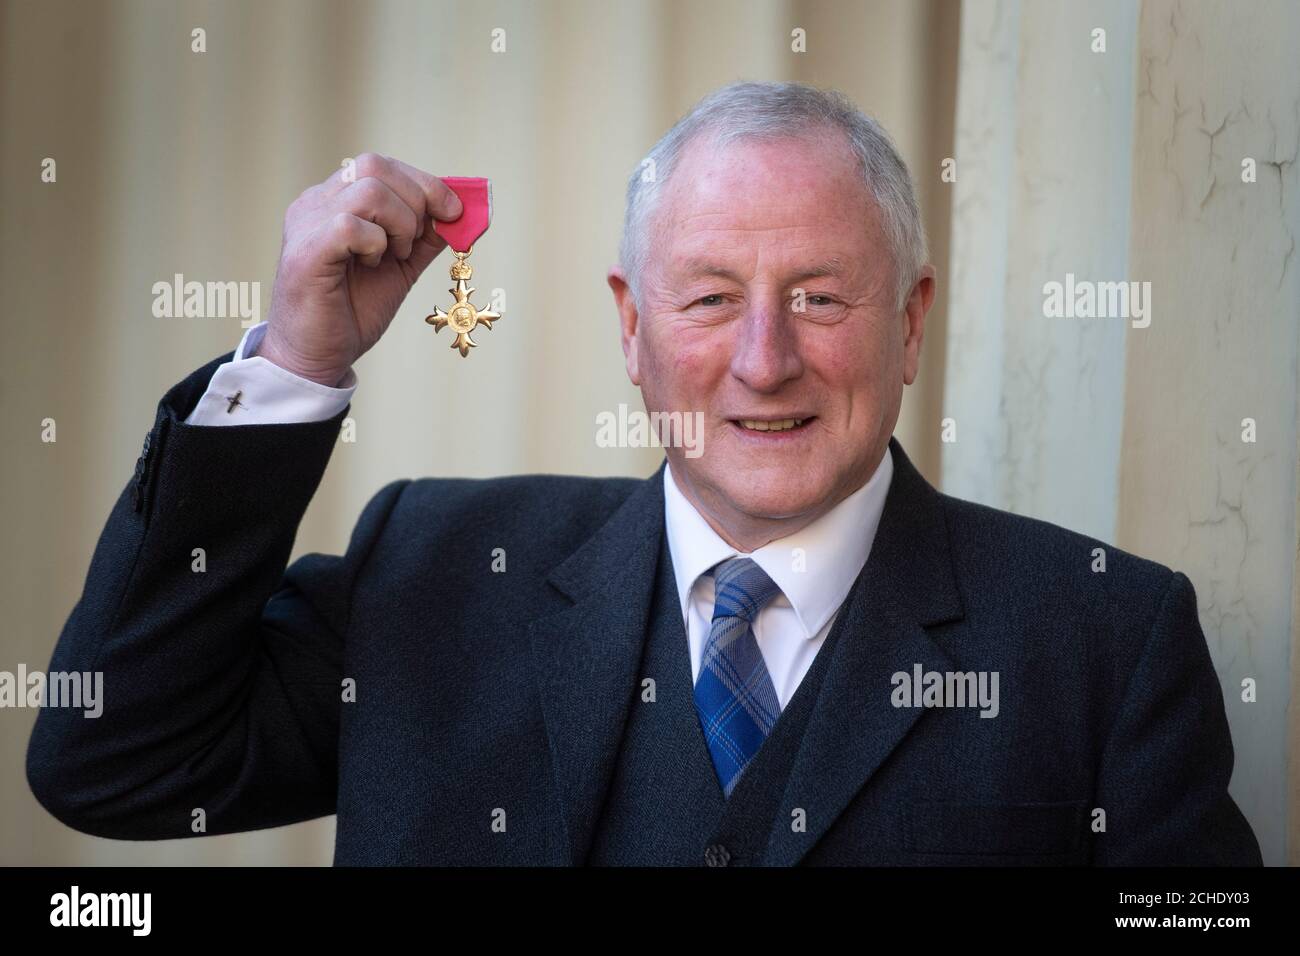 Robert Edwards con il suo OBE (ufficiale dell'Ordine dell'Impero britannico), che è stato presentato in una cerimonia di investitura a Buckingham Palace, Londra. Foto Stock